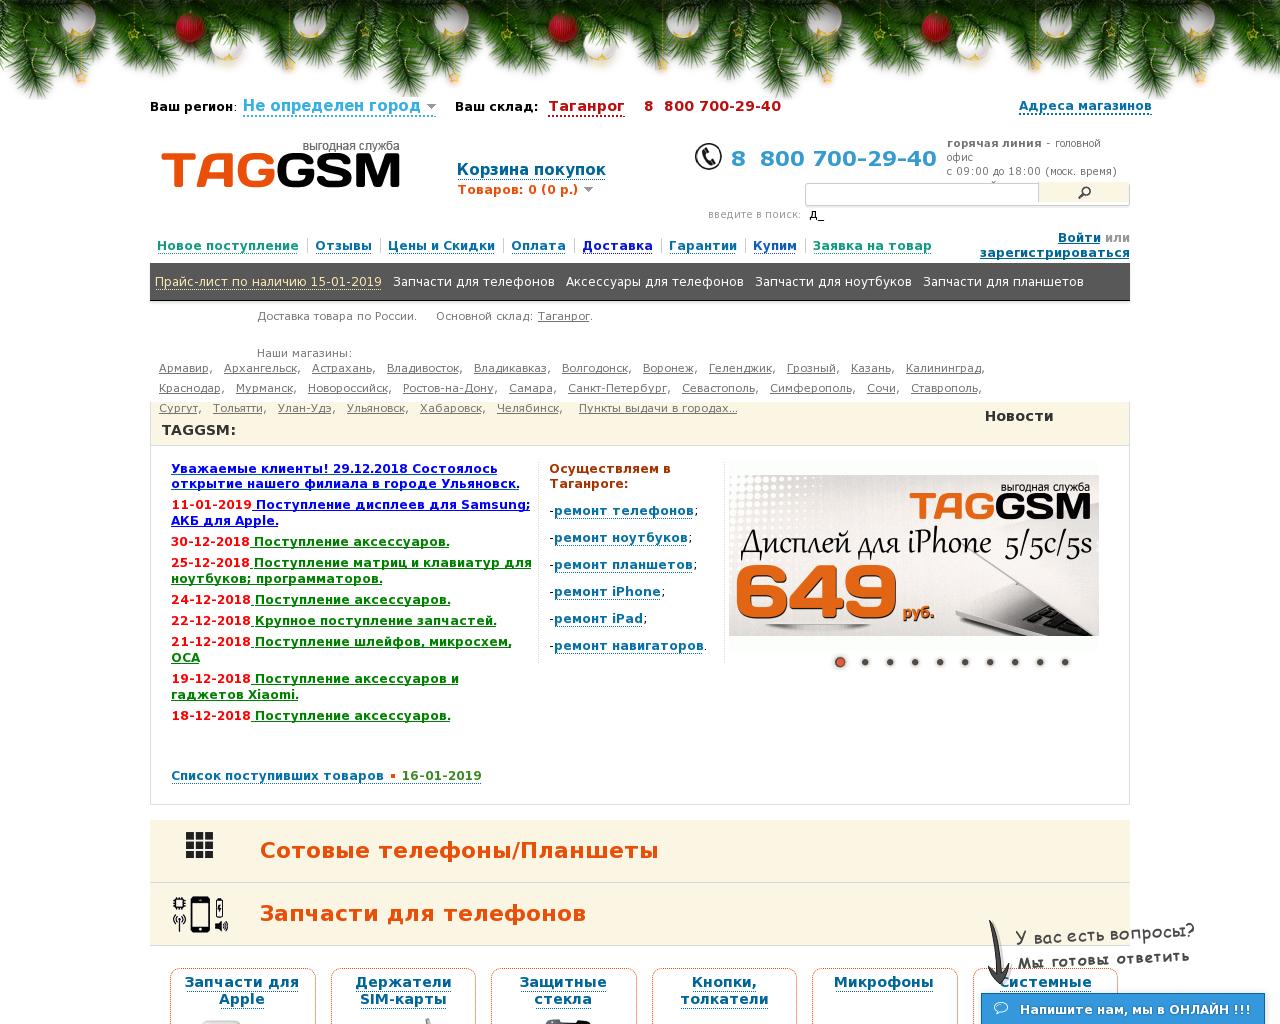 Изображение сайта taggsm.ru в разрешении 1280x1024